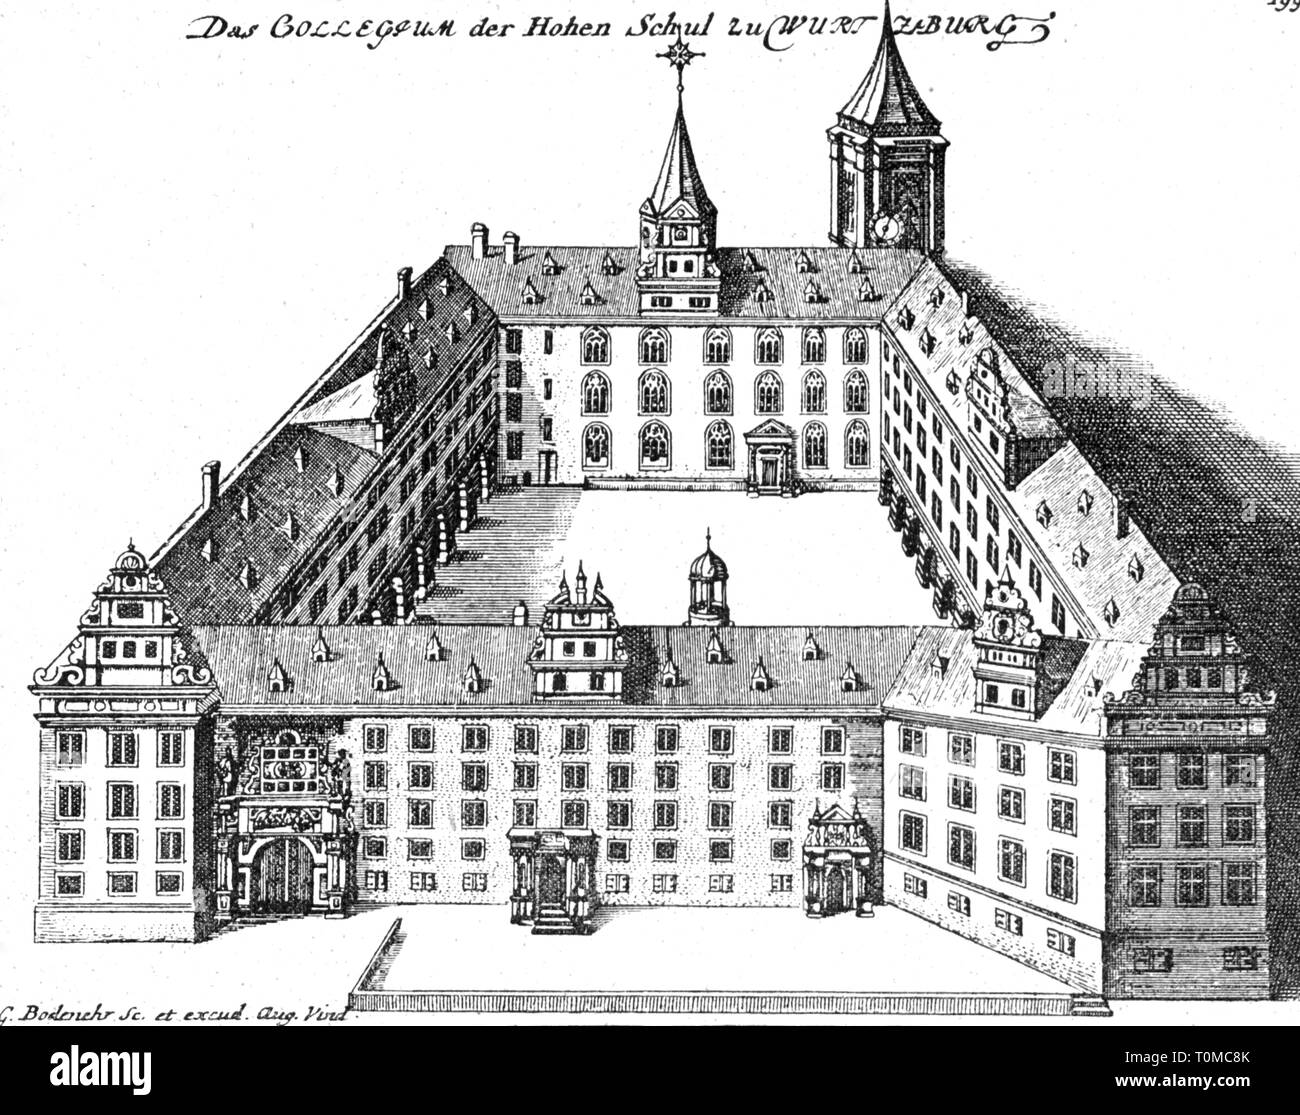 Pädagogik, Universität Würzburg, Gebäude, Außenansicht, Kupferstich, um 1700, Artist's Urheberrecht nicht geklärt zu werden. Stockfoto